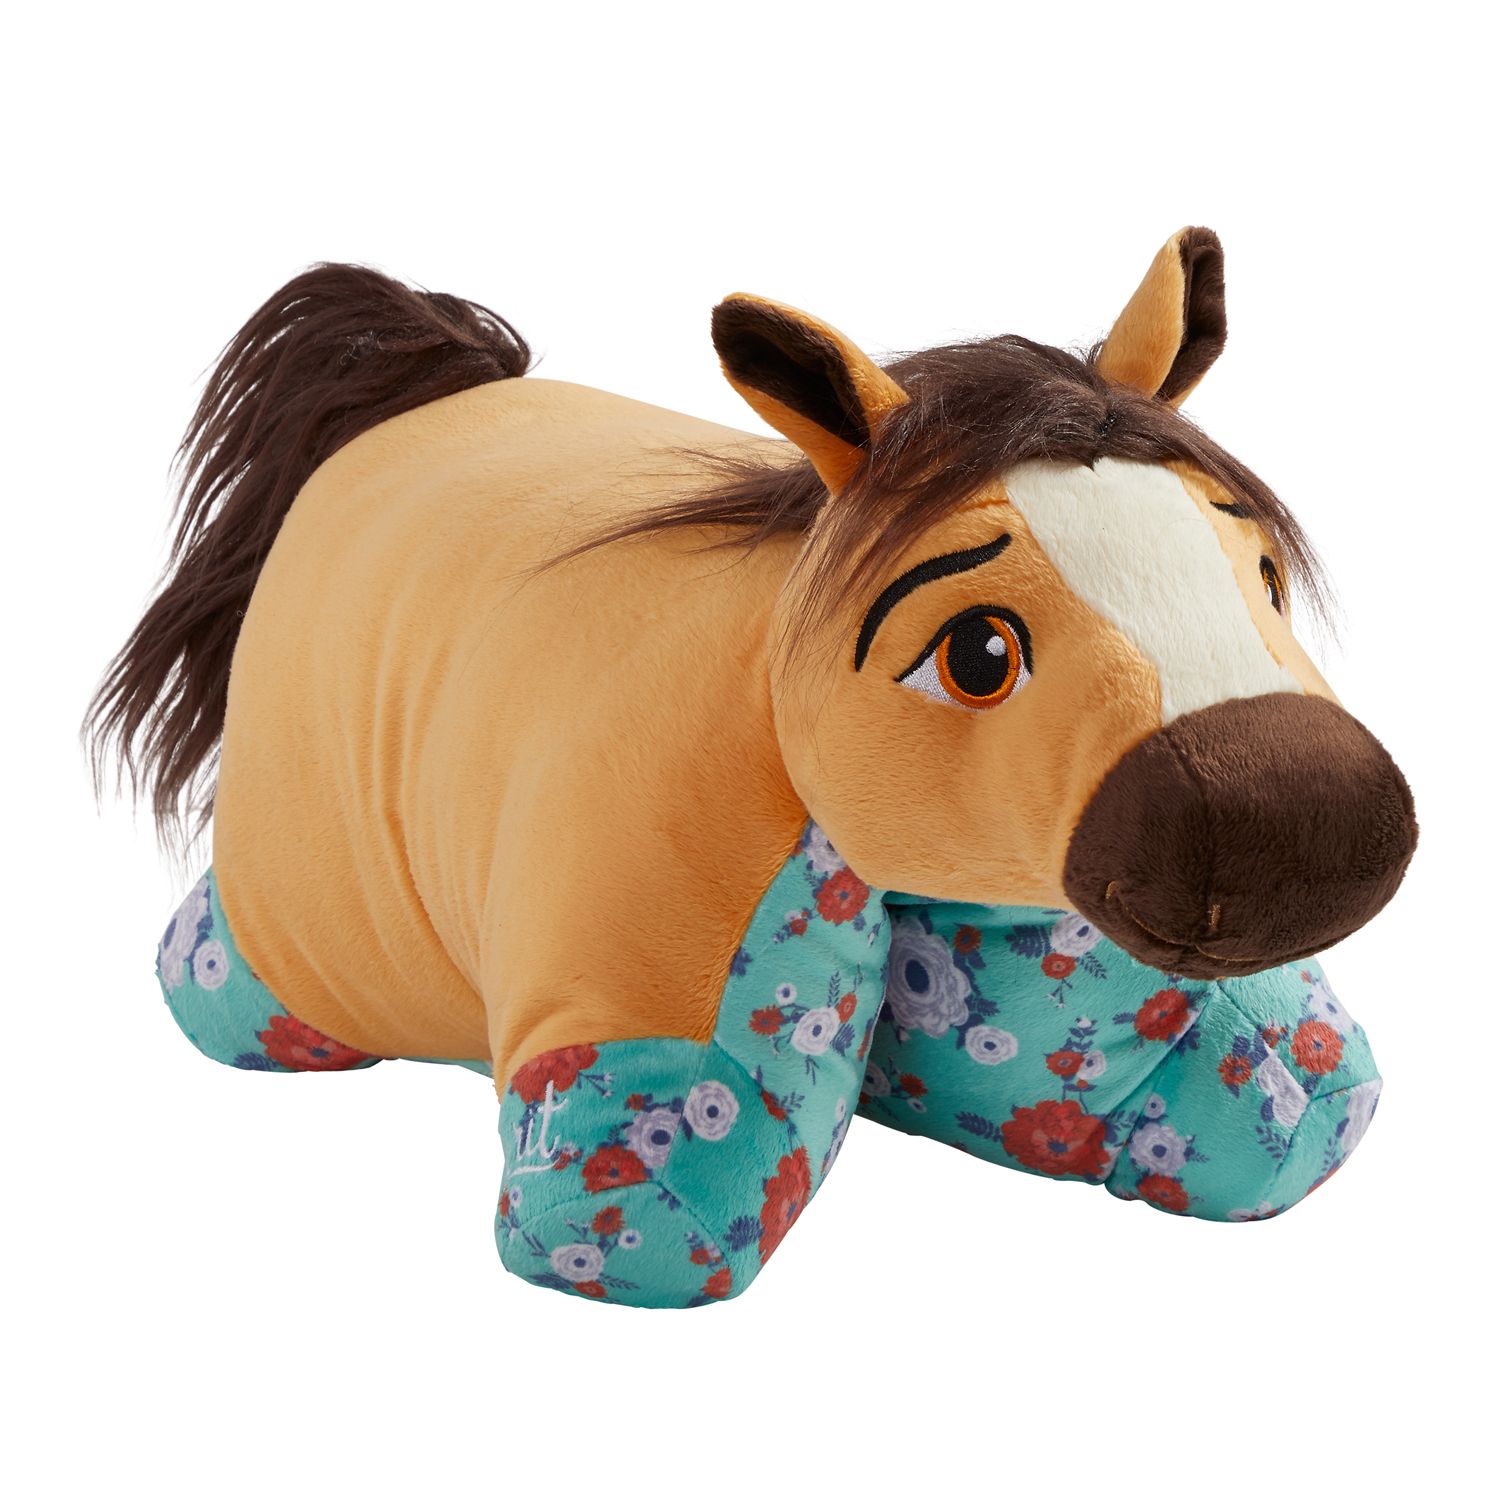 extra large stuffed horse